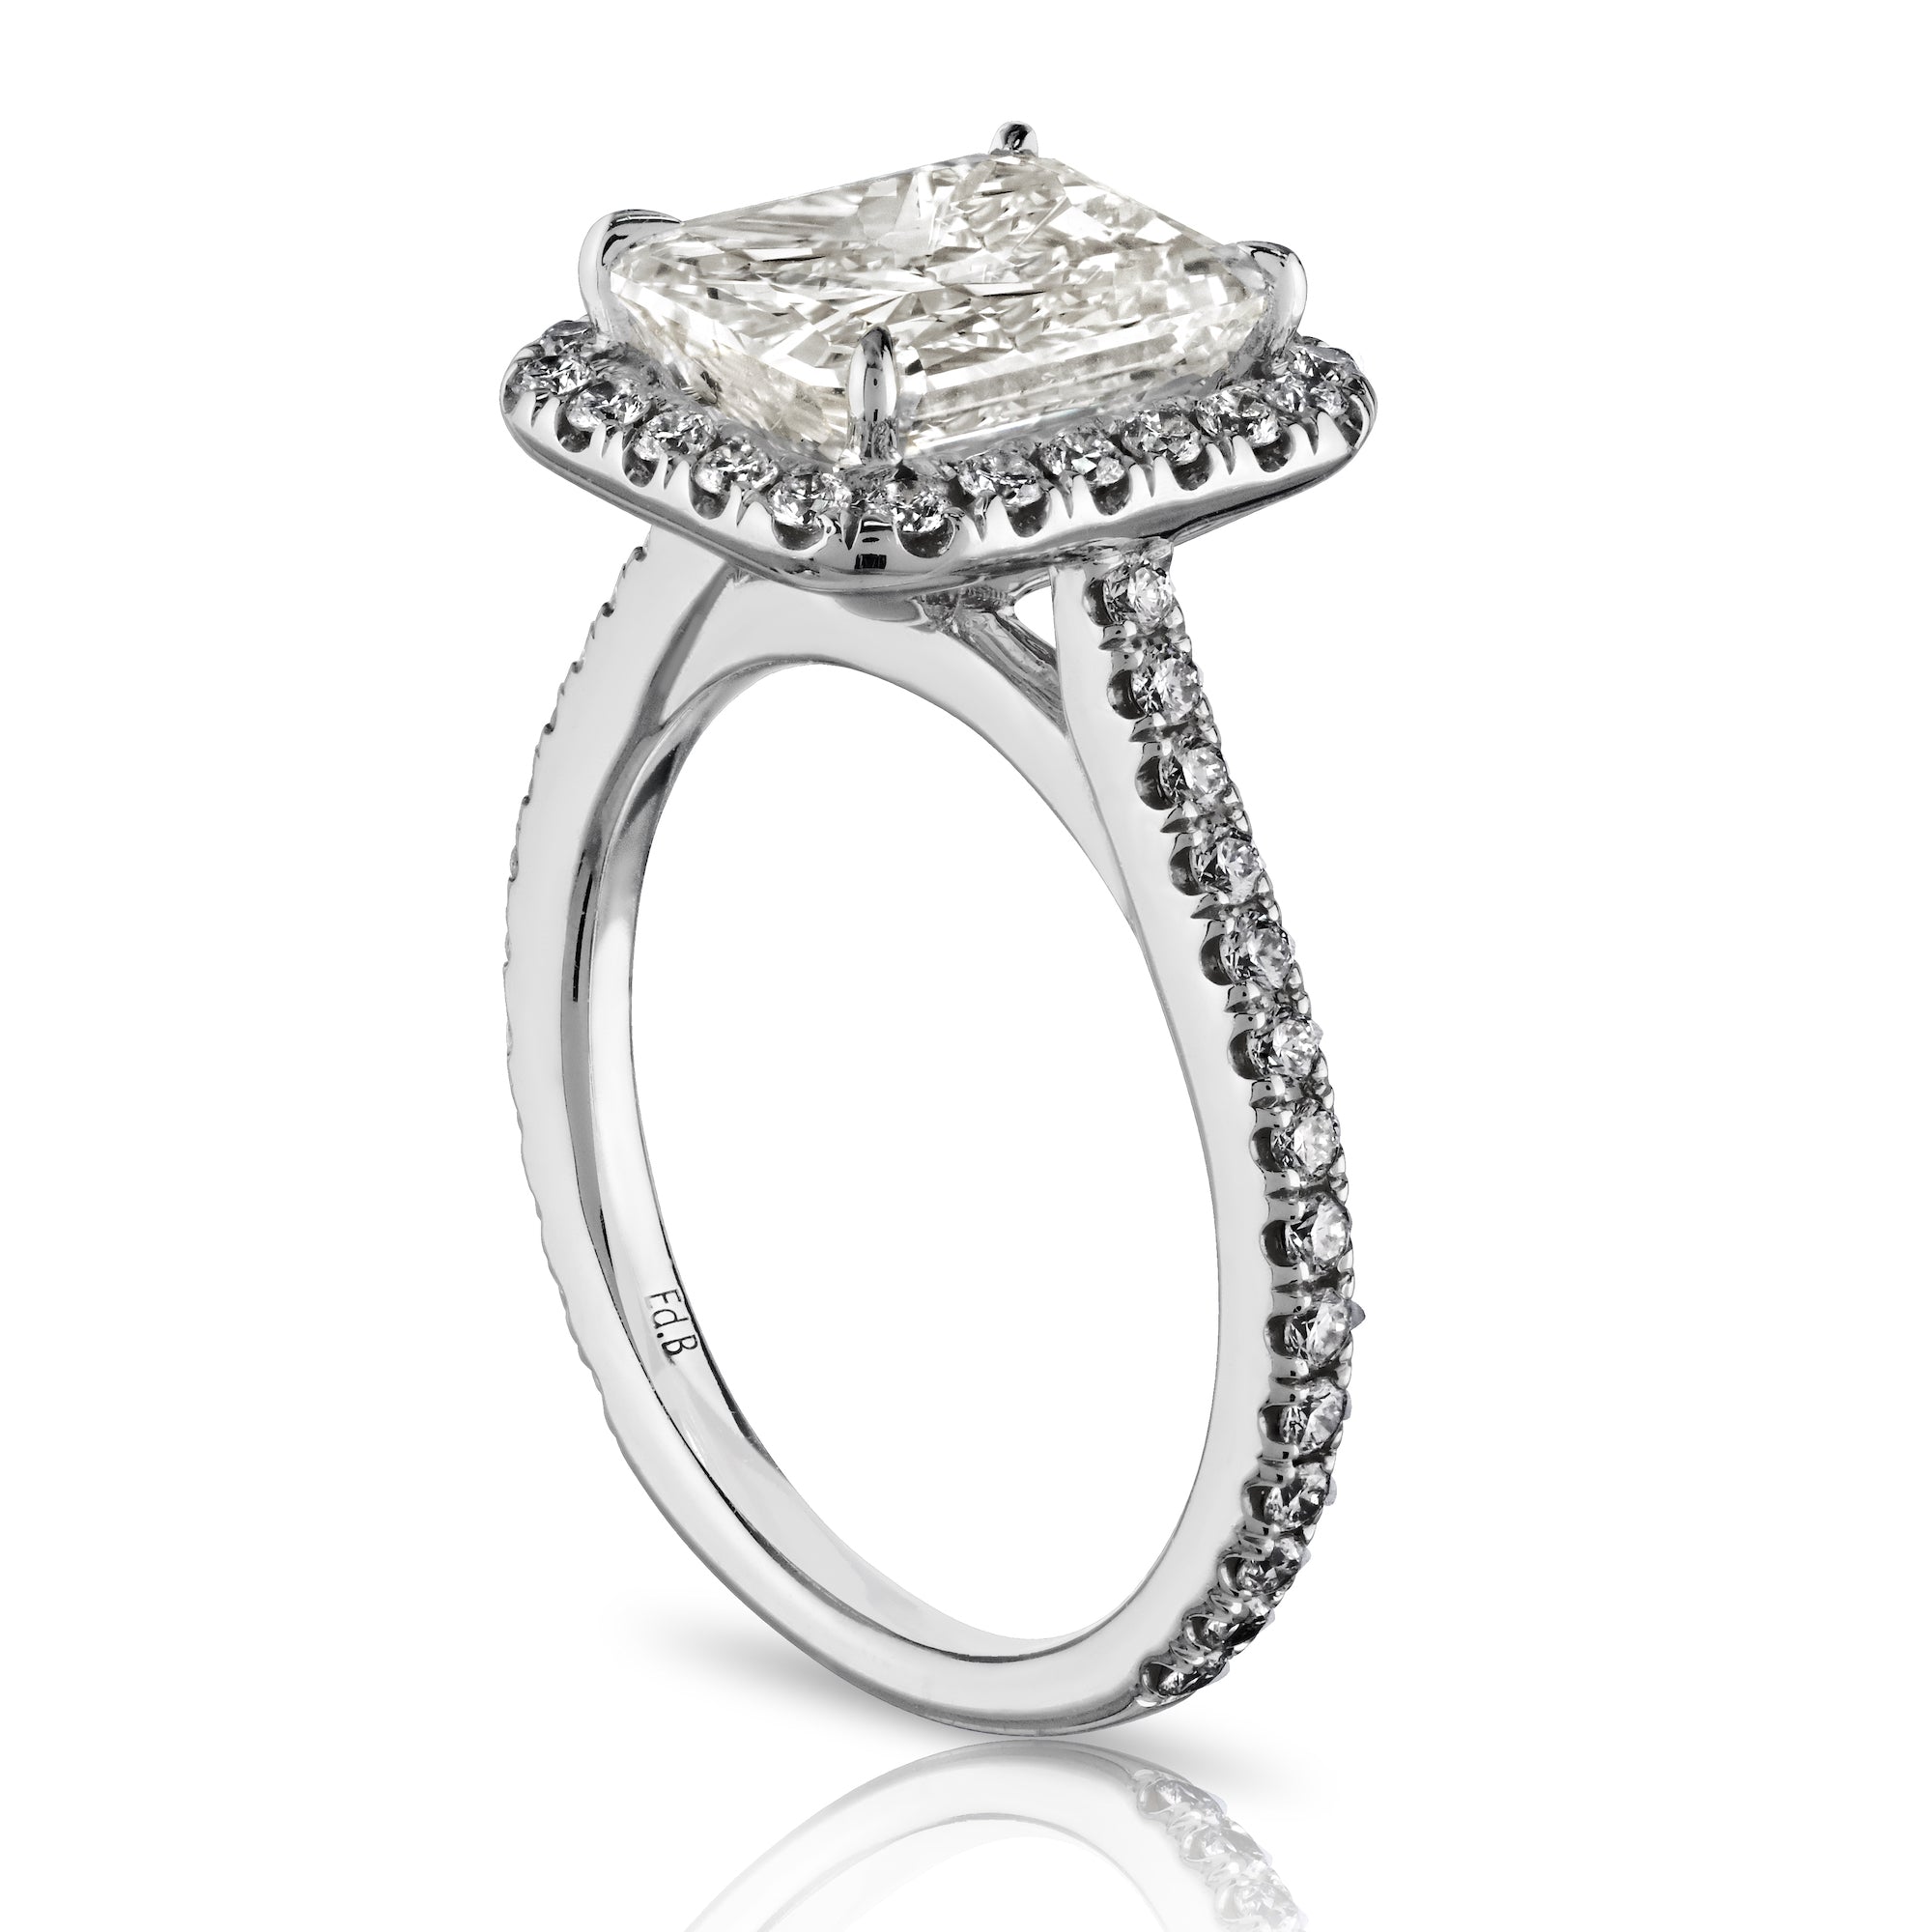 Radiant Cut Diamond Ring with Round Diamond Pave, 3.36 CT - Rings - Leviev Diamonds